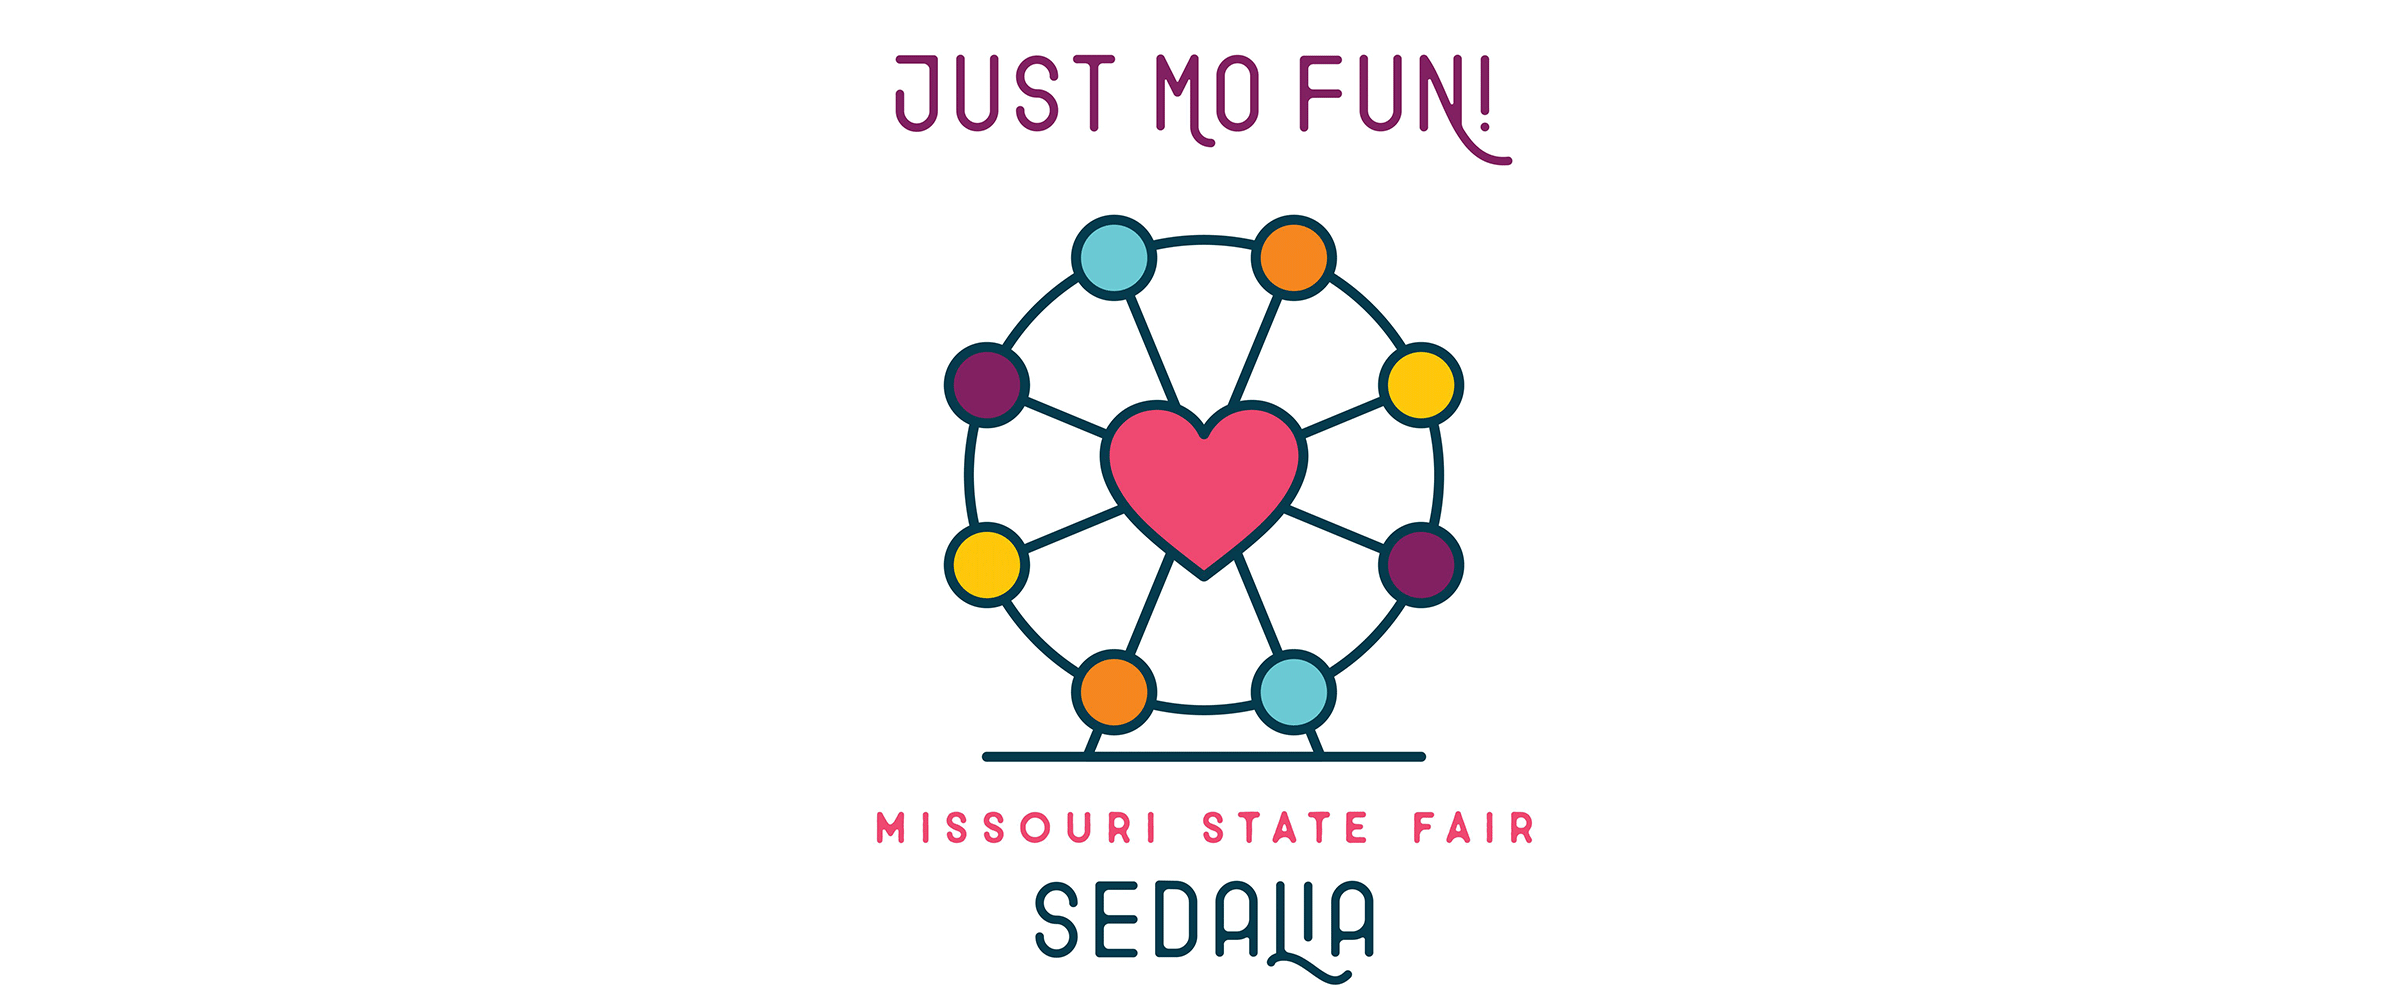 Missouri State Fair Sedalia